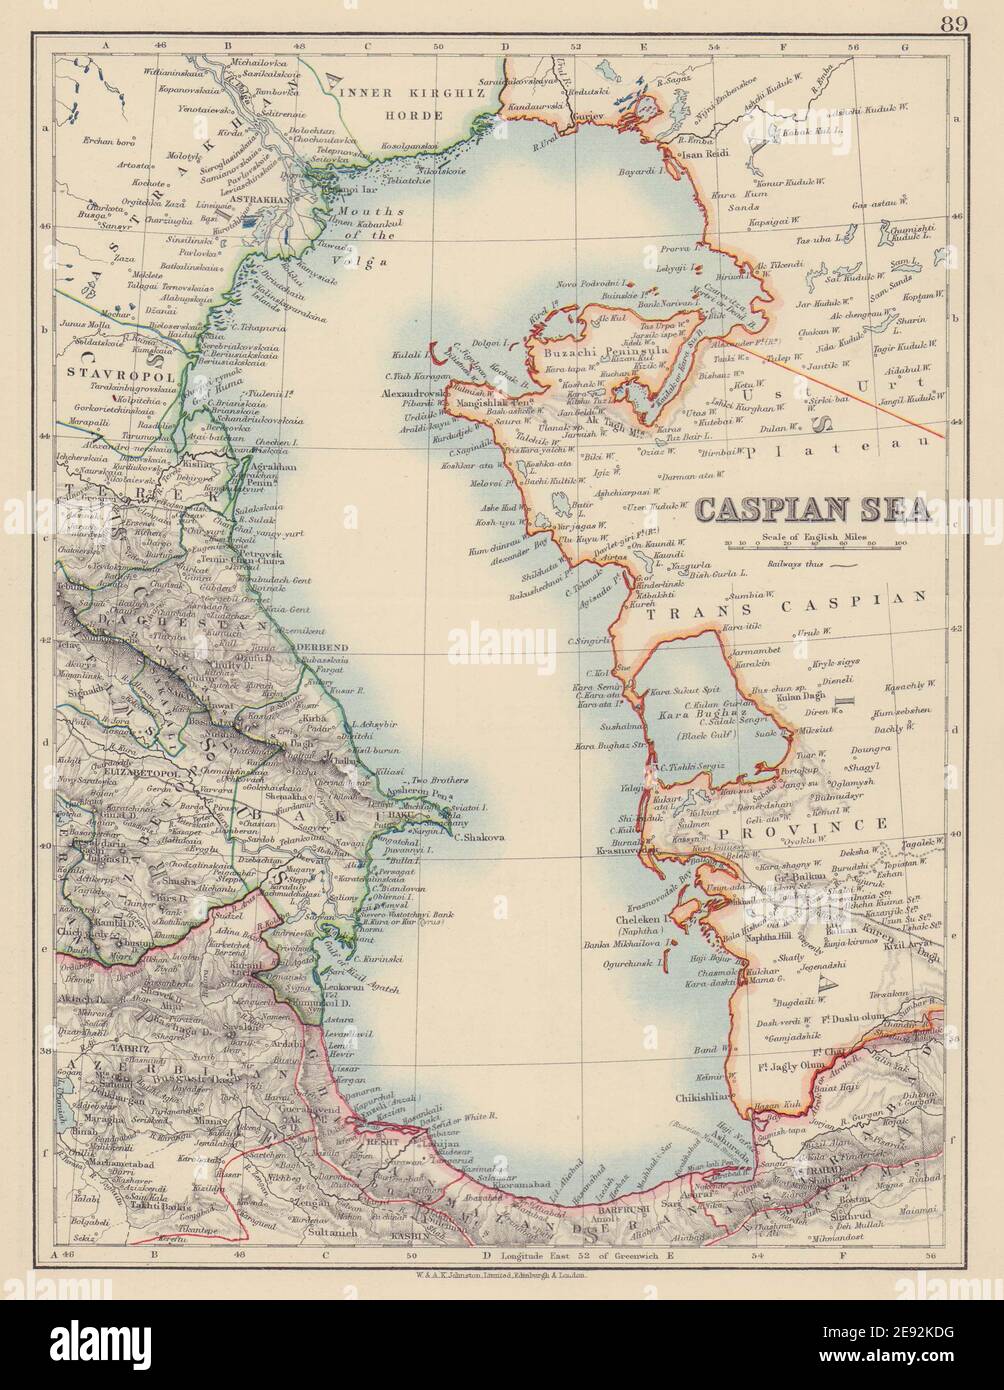 KASPISCHES MEER. Baku Persien Iran Astrachan. Innere Kirgisischen Horde. JOHNSTON 1901 Karte Stockfoto